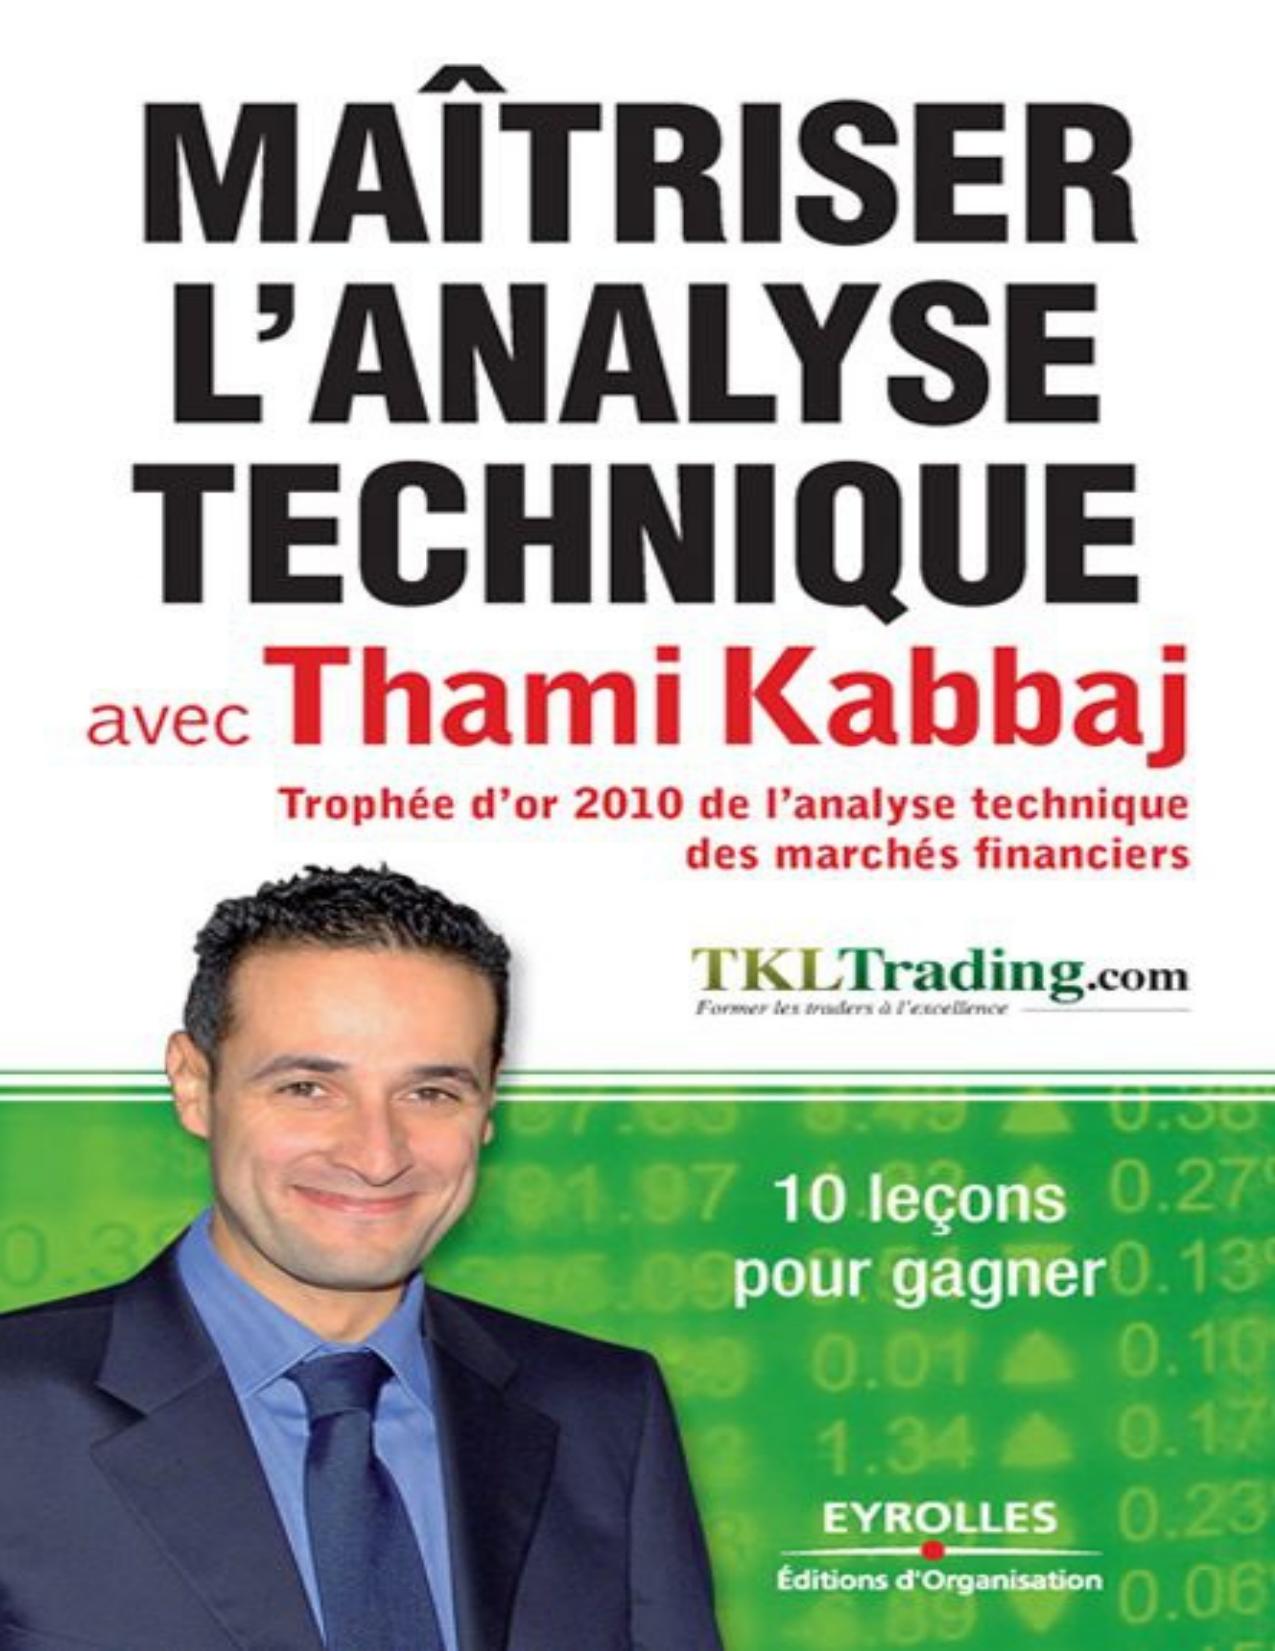 Maîtriser l'analyse technique avec Thami Kabbaj : 10 leçons pour gagner.